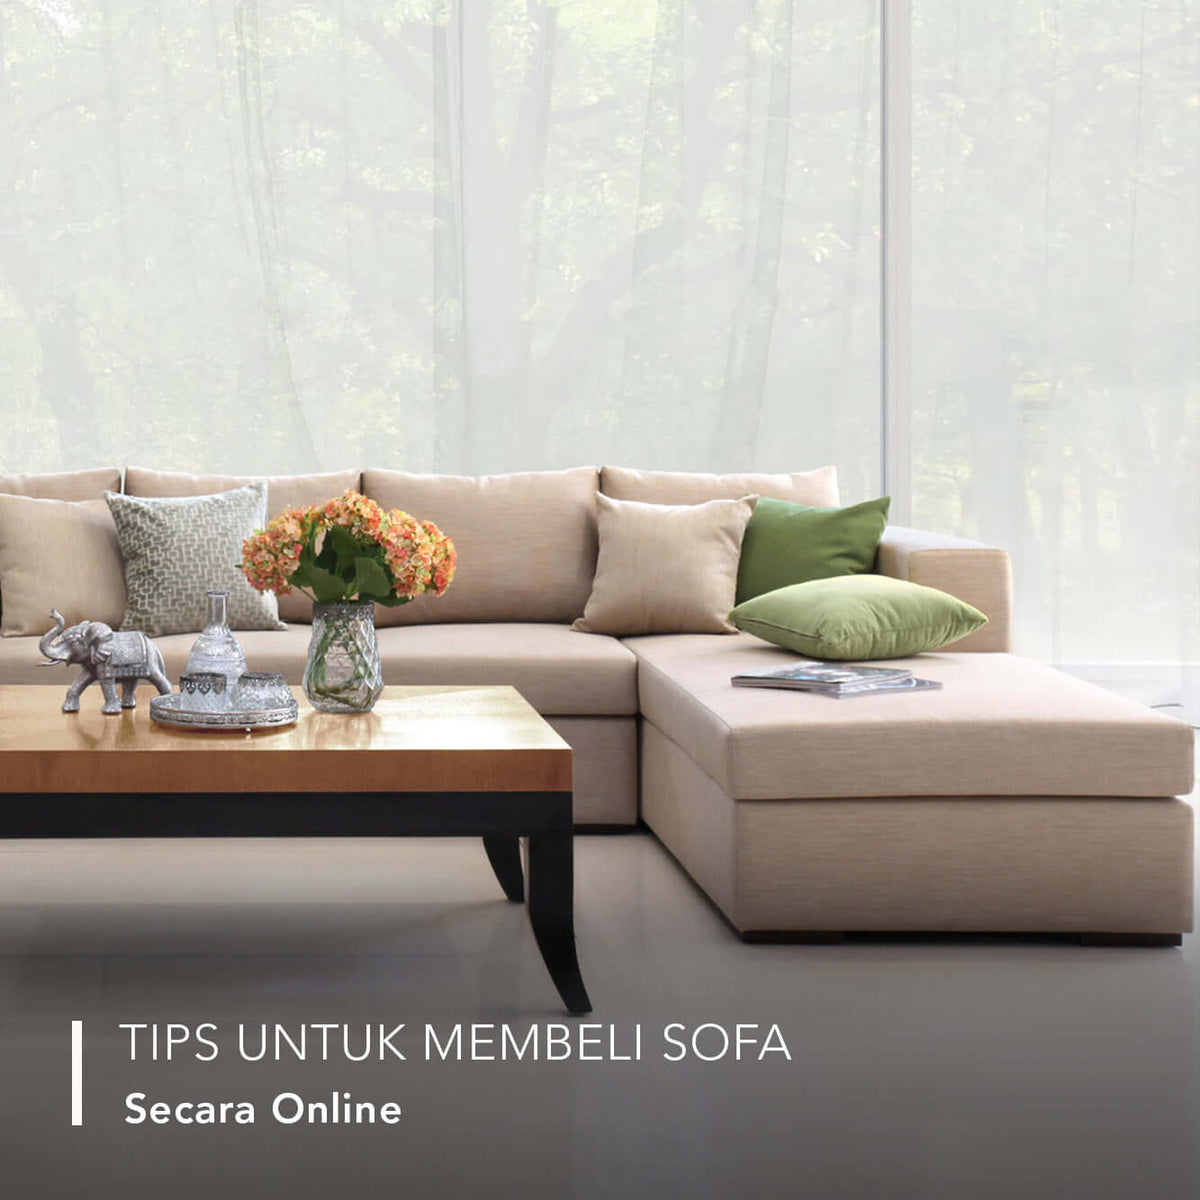 Tips Untuk Membeli Sofa Secara Online